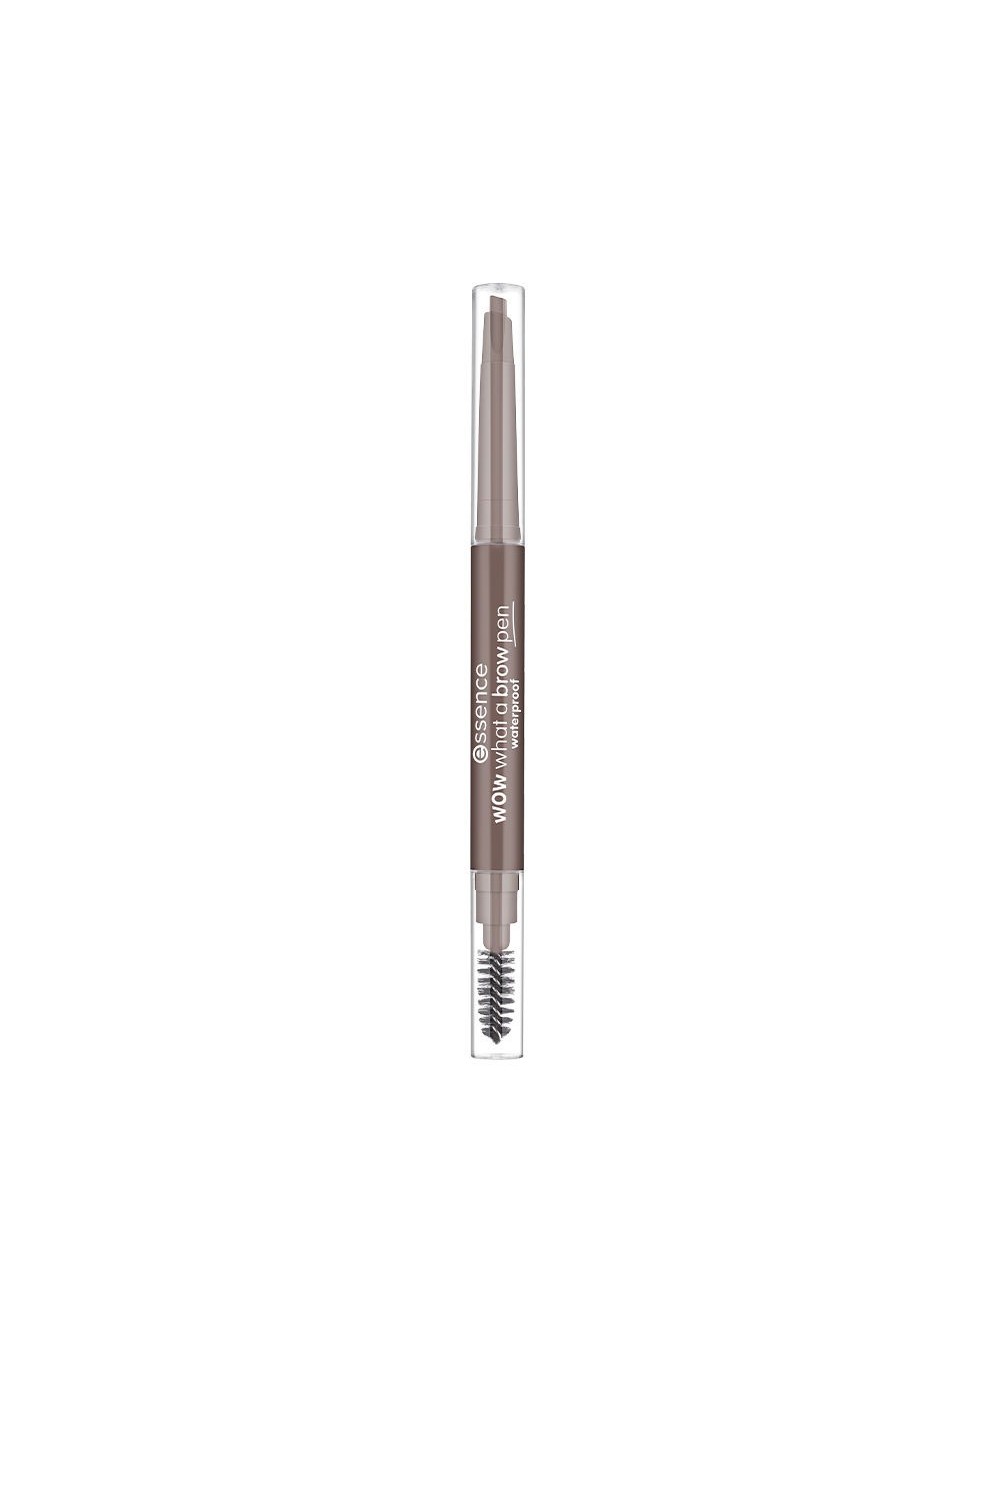 Essence Cosmetics Wow What A Brow Pen Lápiz De Cejas Waterproof 01-Light Brown 0,2g